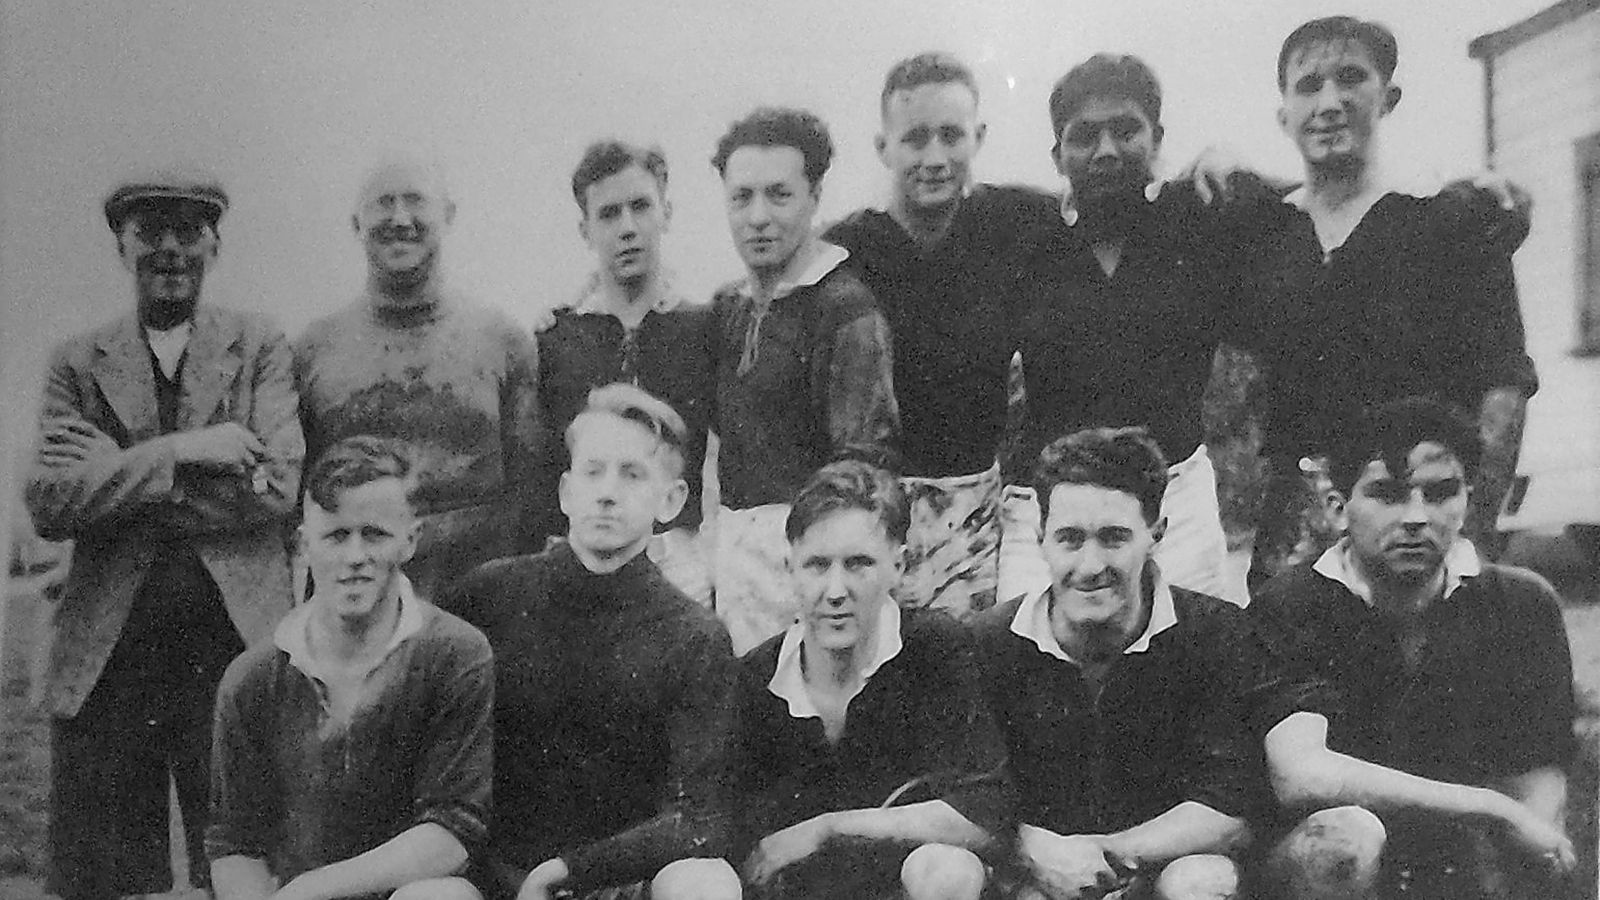 Original 1943 VUWAFC team